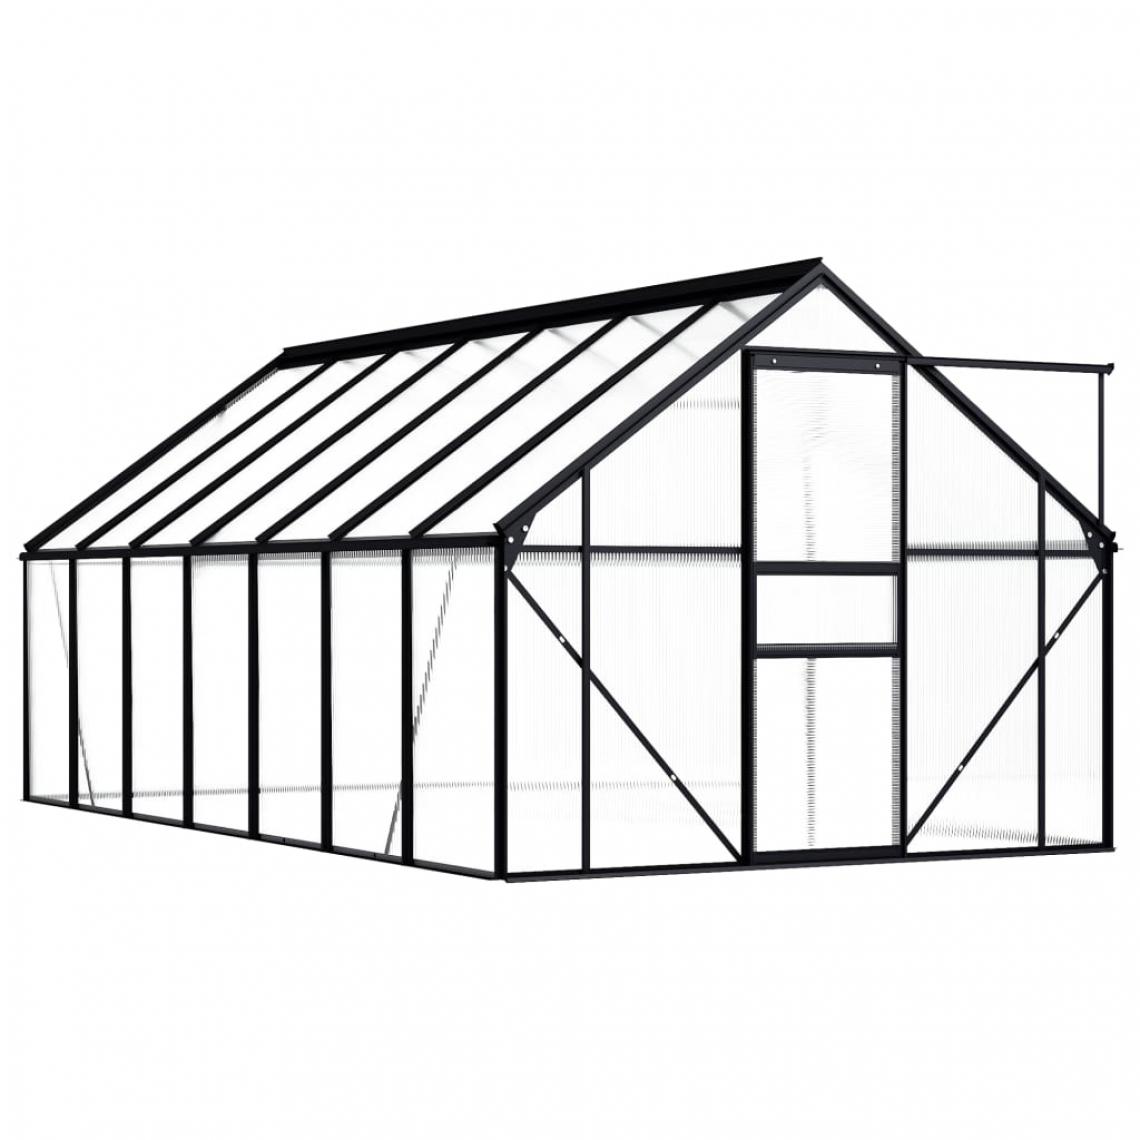 Icaverne - Icaverne - Serres de jardin gamme Serre Anthracite Aluminium 8,17 m² - Serres en verre